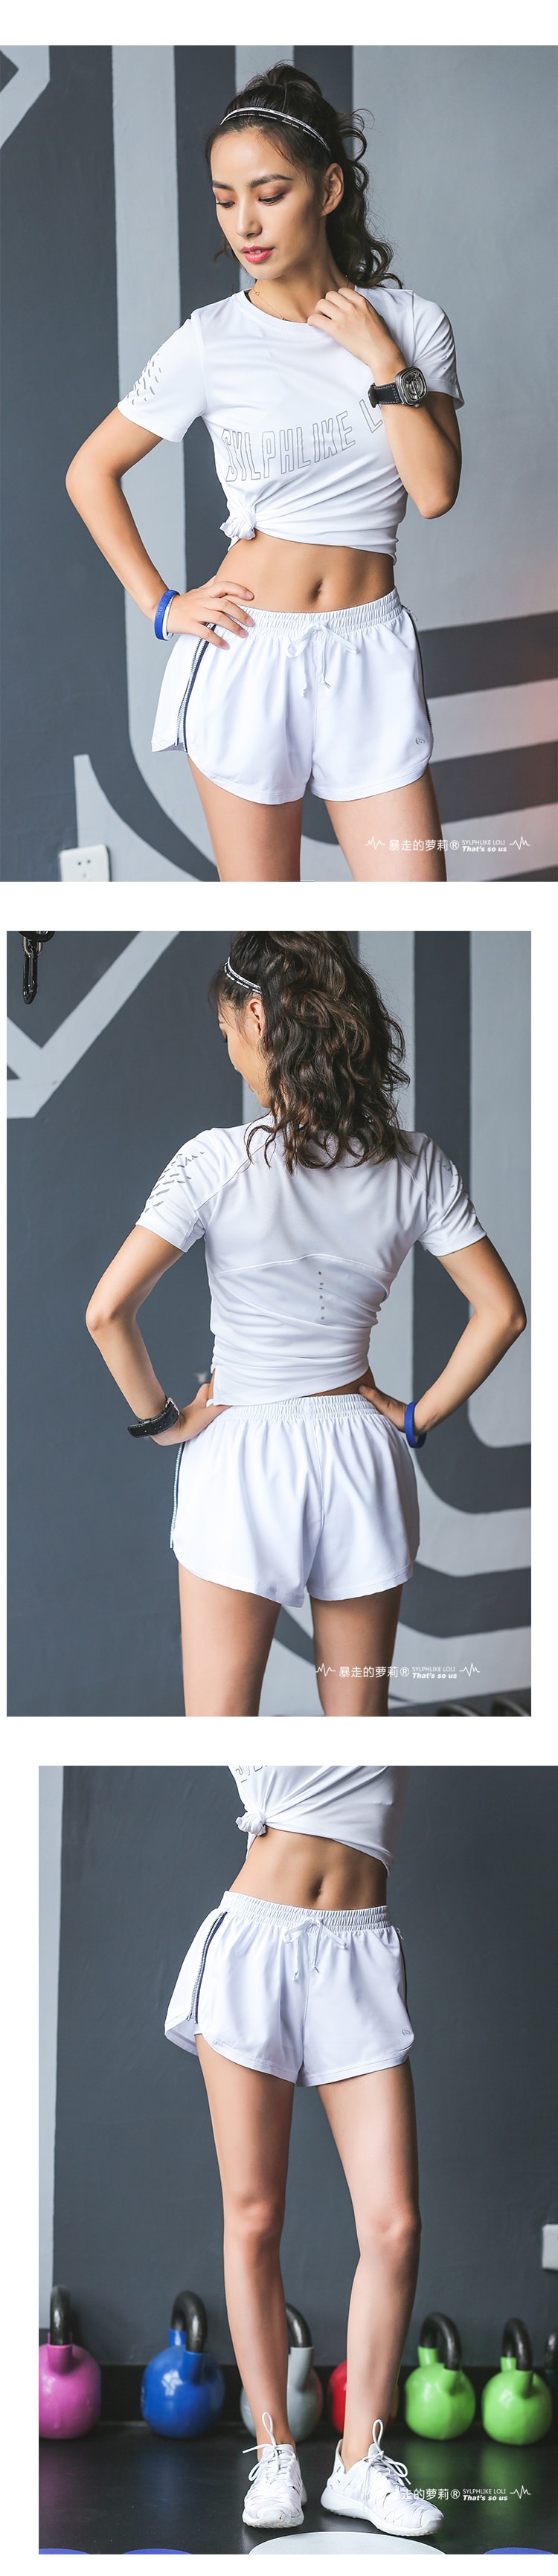 中国直邮 暴走的萝莉 运动防走光短裤 宽松速干跑步健身瑜伽 /芝麻黑#/S